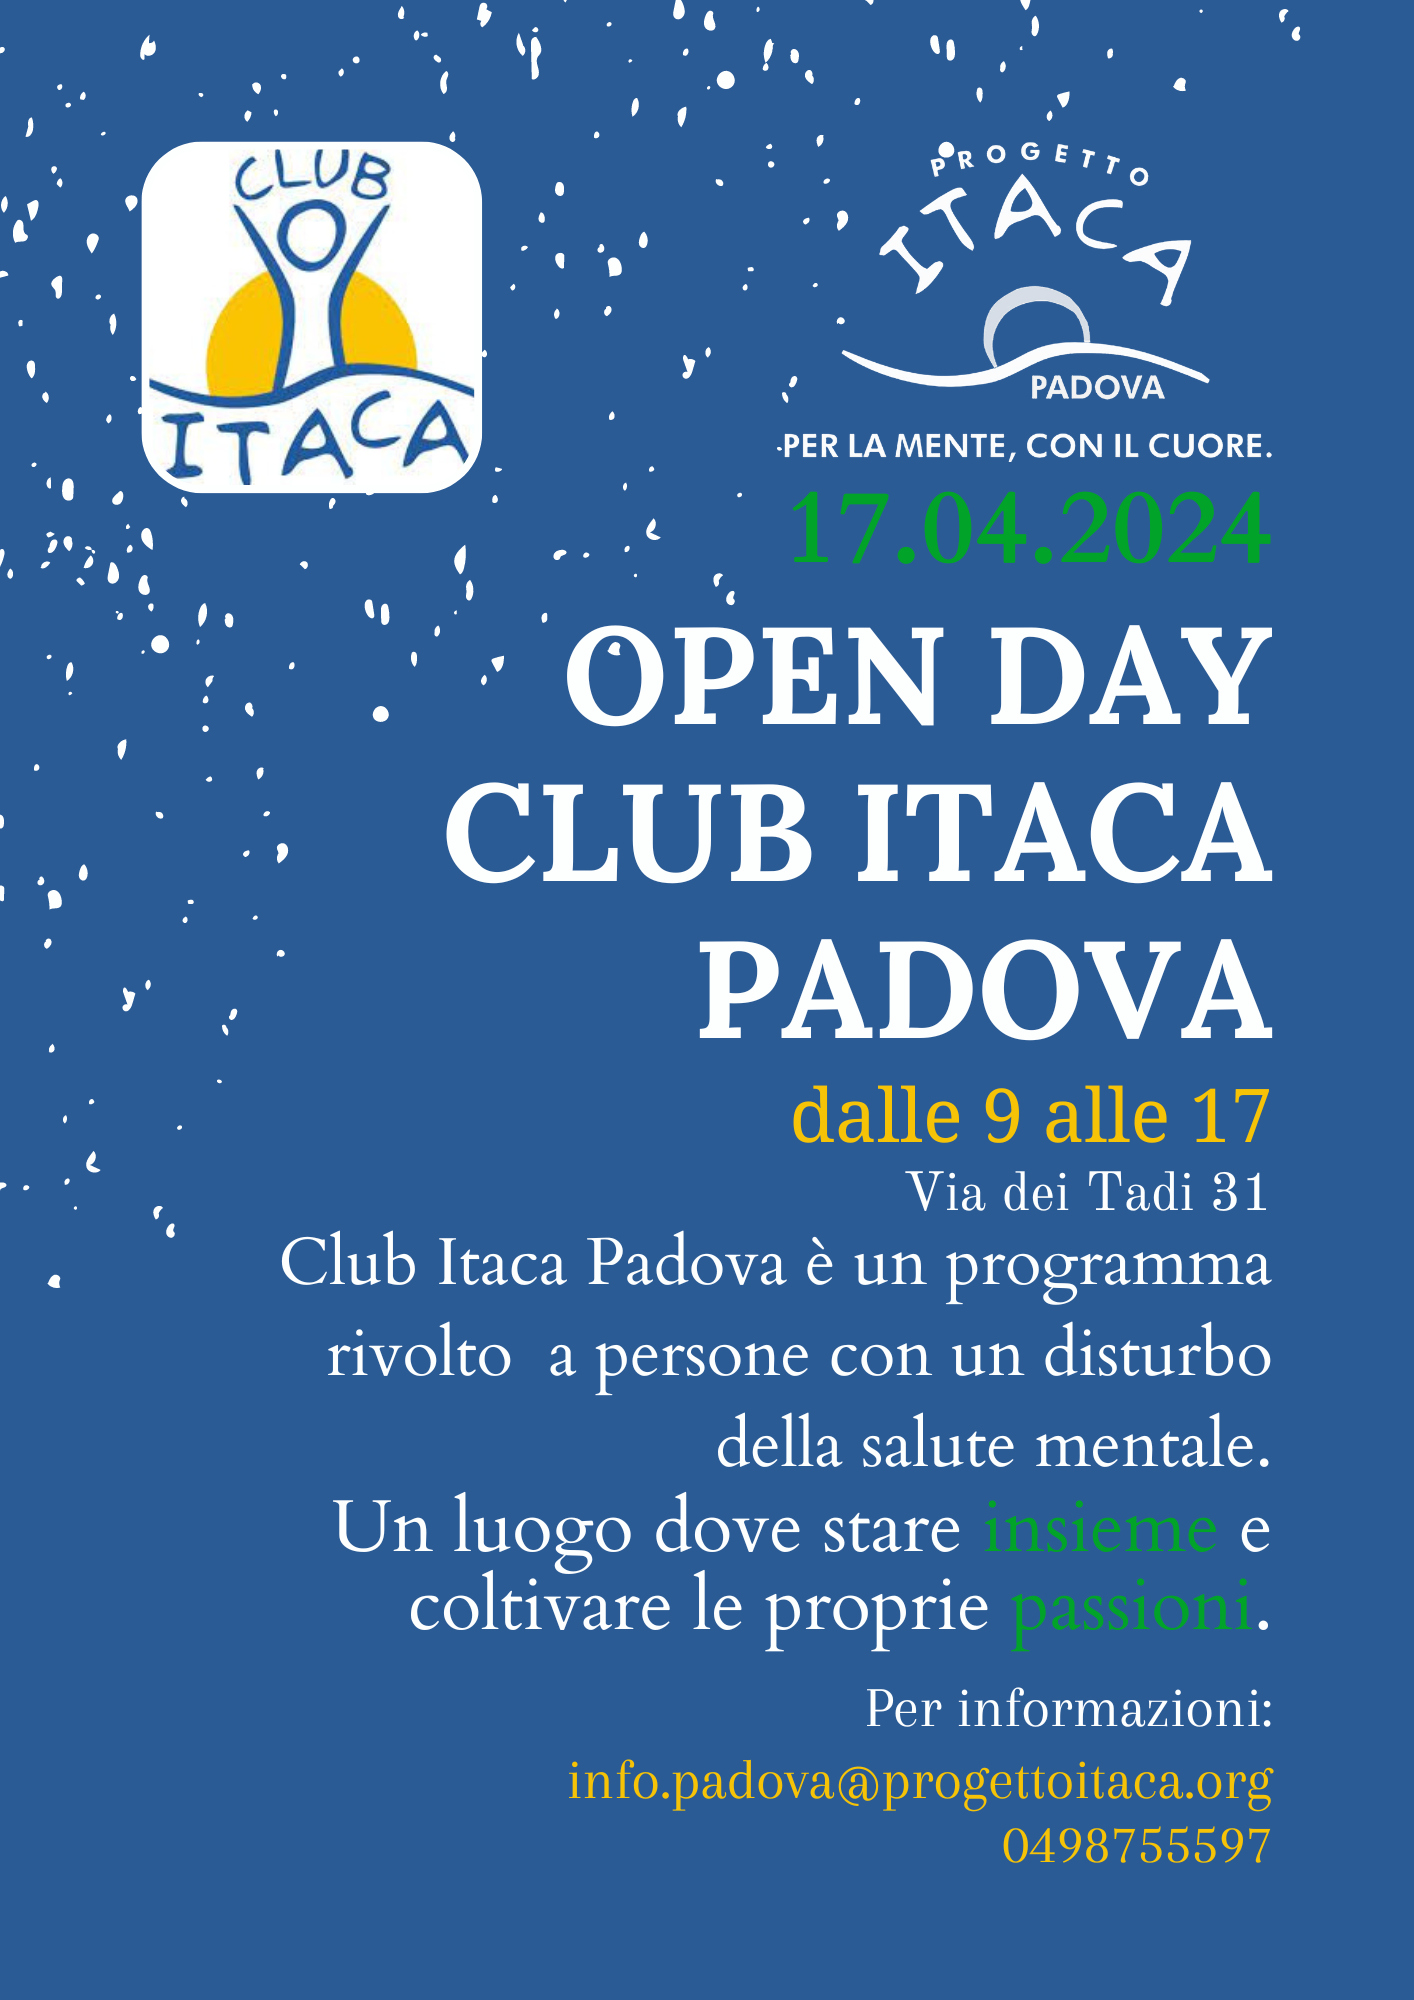 OPEN DAY PRESENTAZIONE CLUB ITACA PADOVA